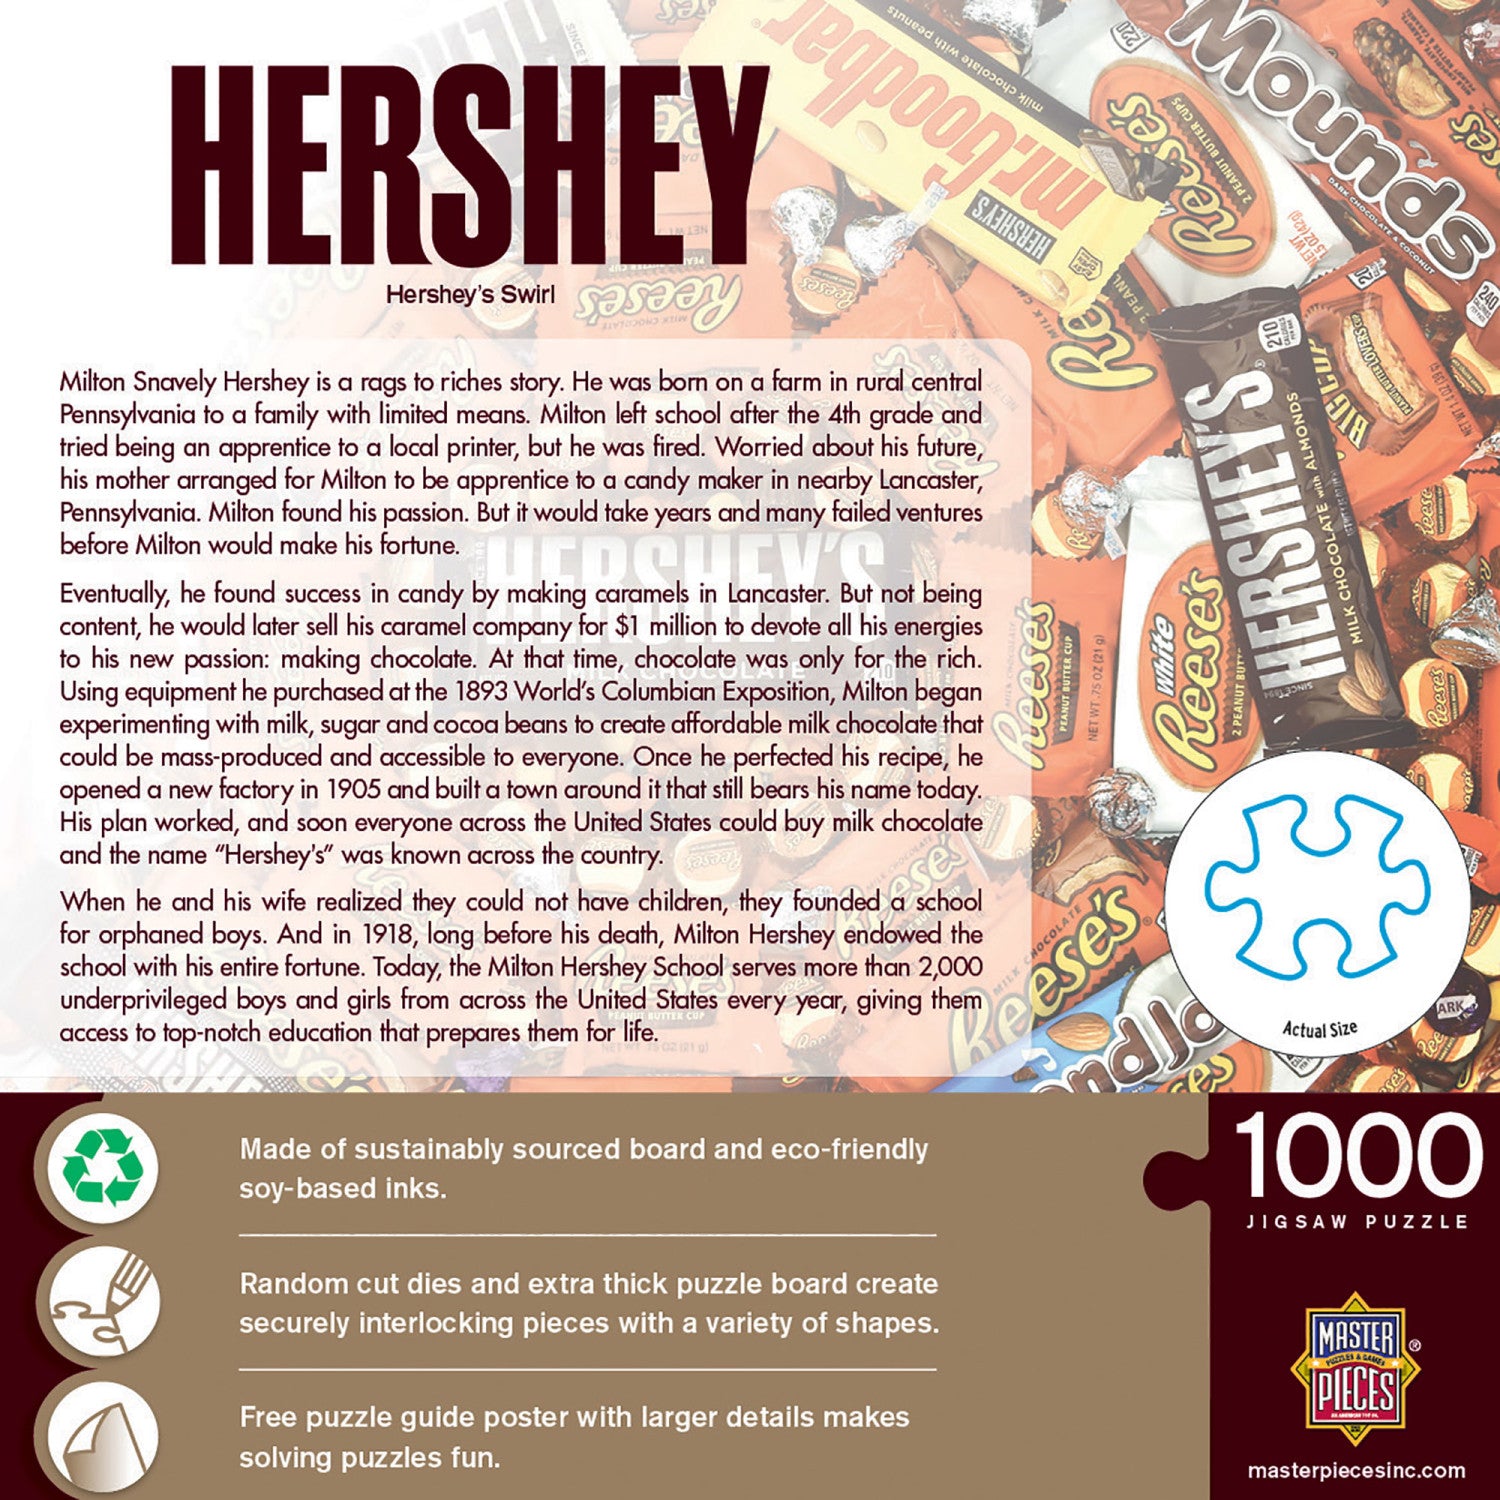 Hershey's Swirl - 1000 Piece Puzzle